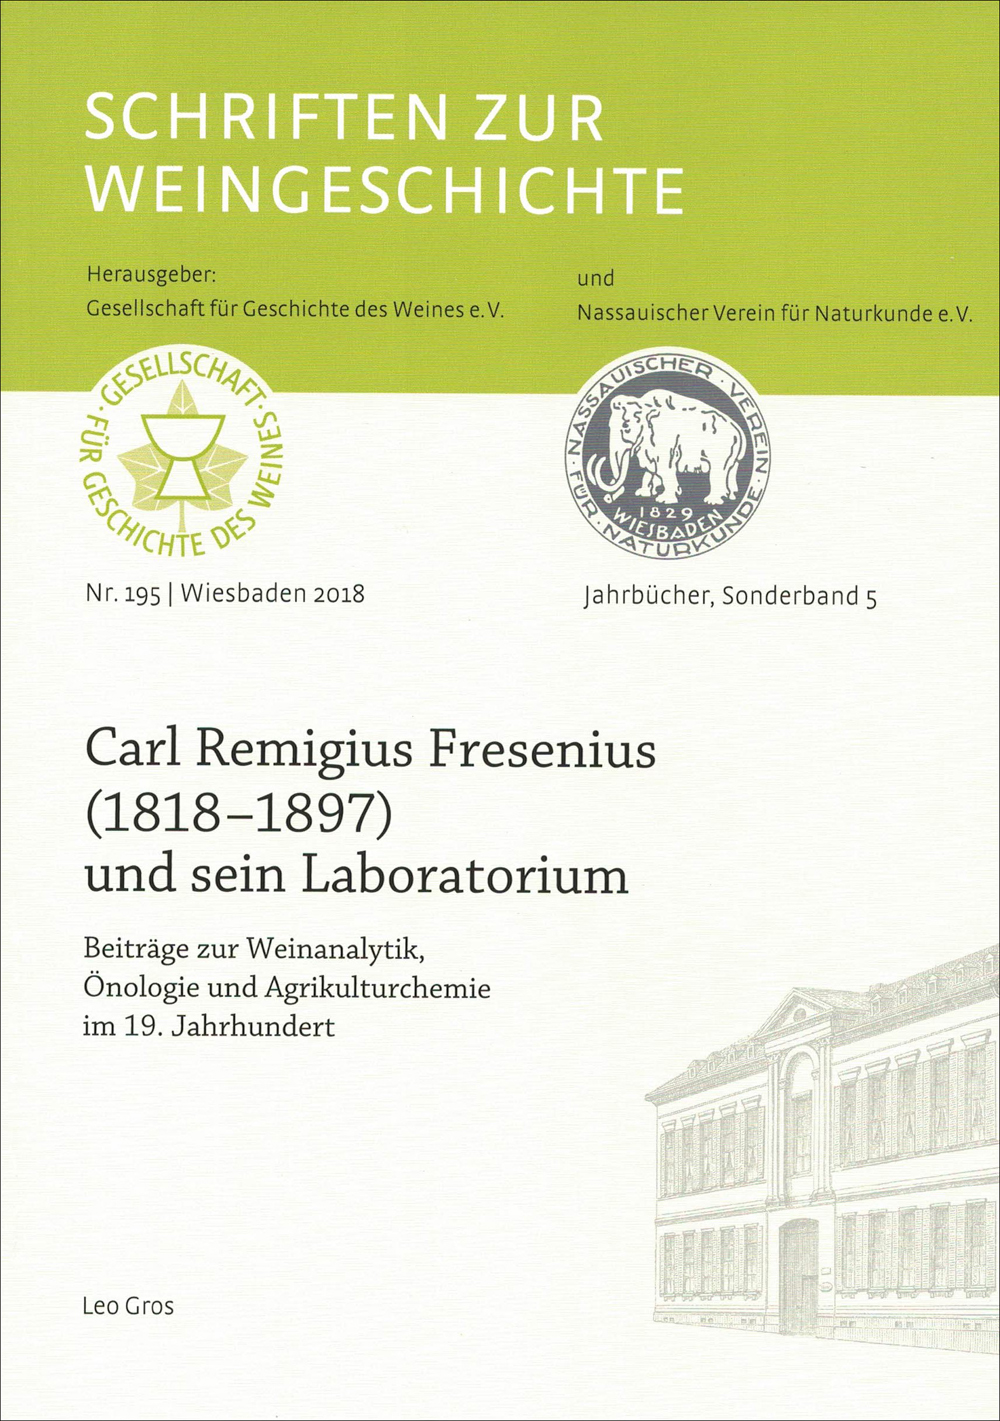 Carl Remigius Fresenius